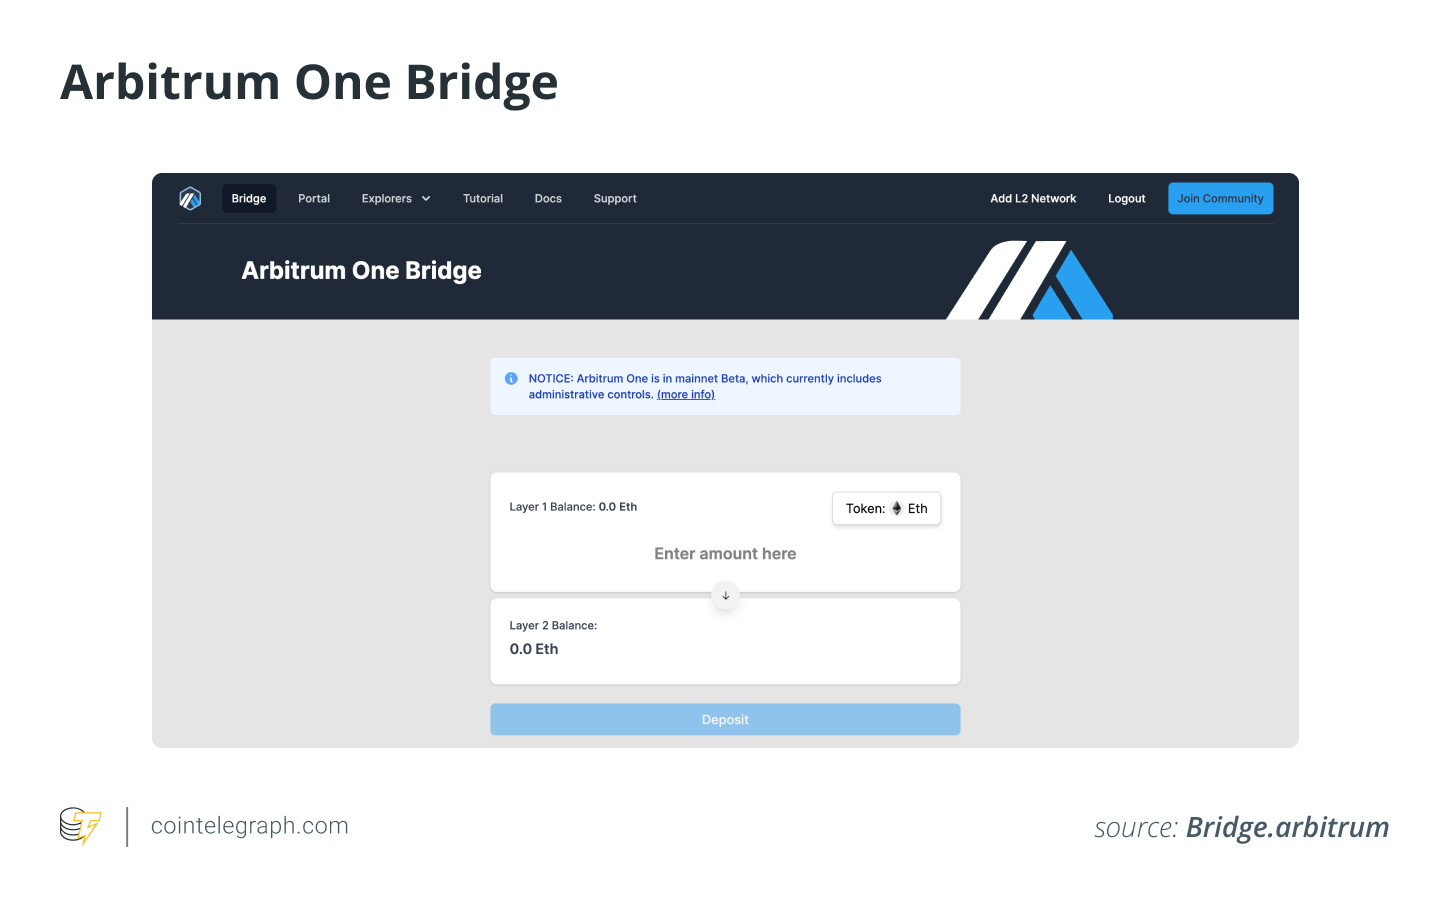 Arbitrum One Bridge